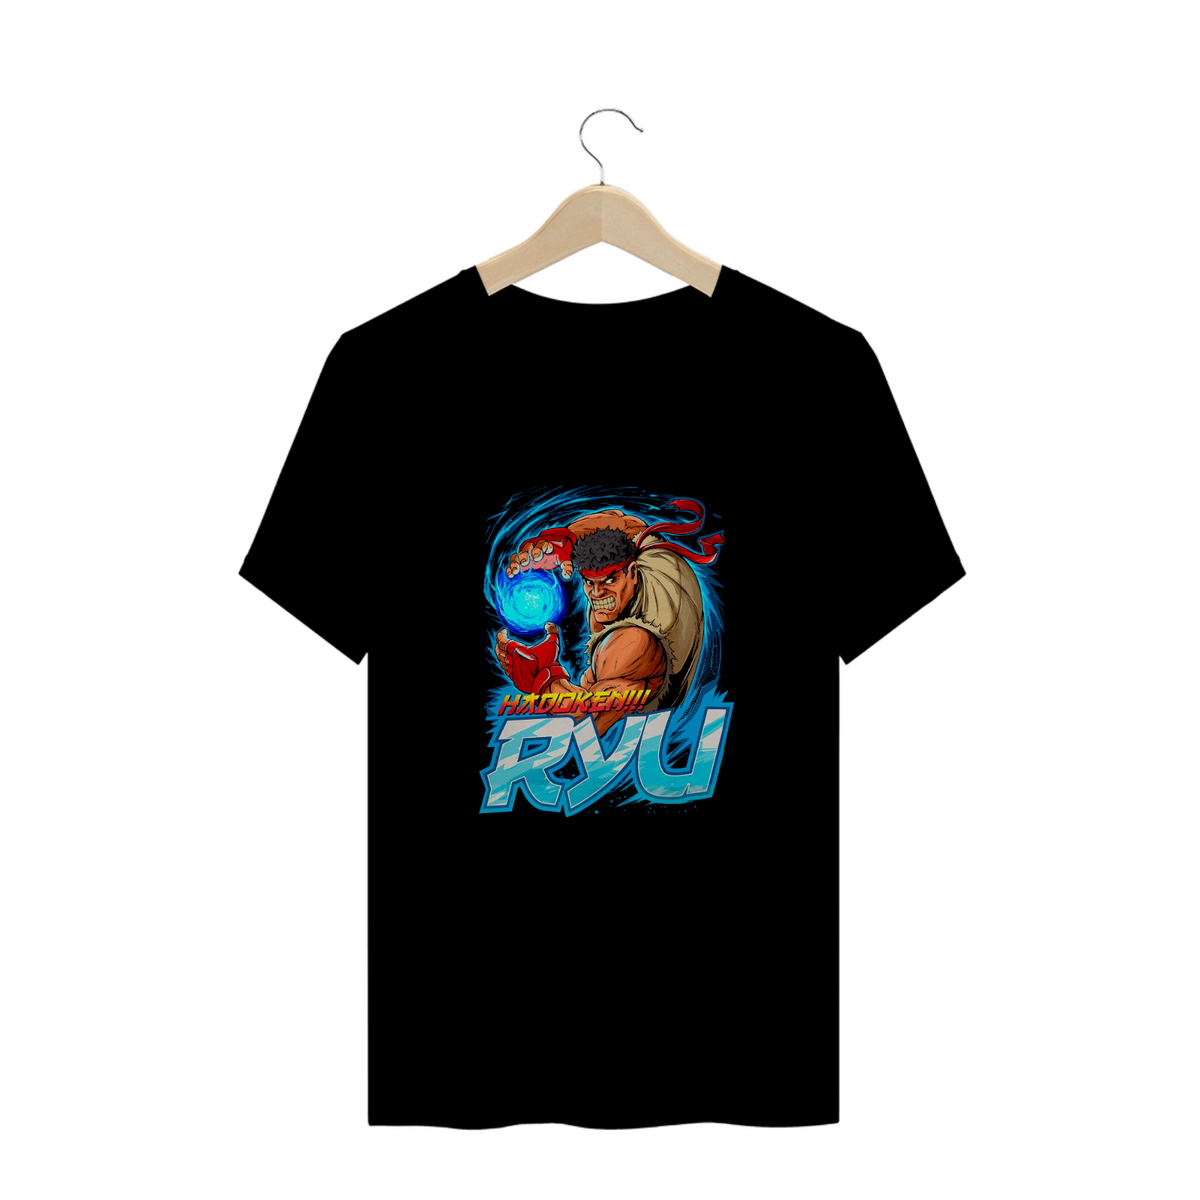 Nome do produto: Camisa Ryu